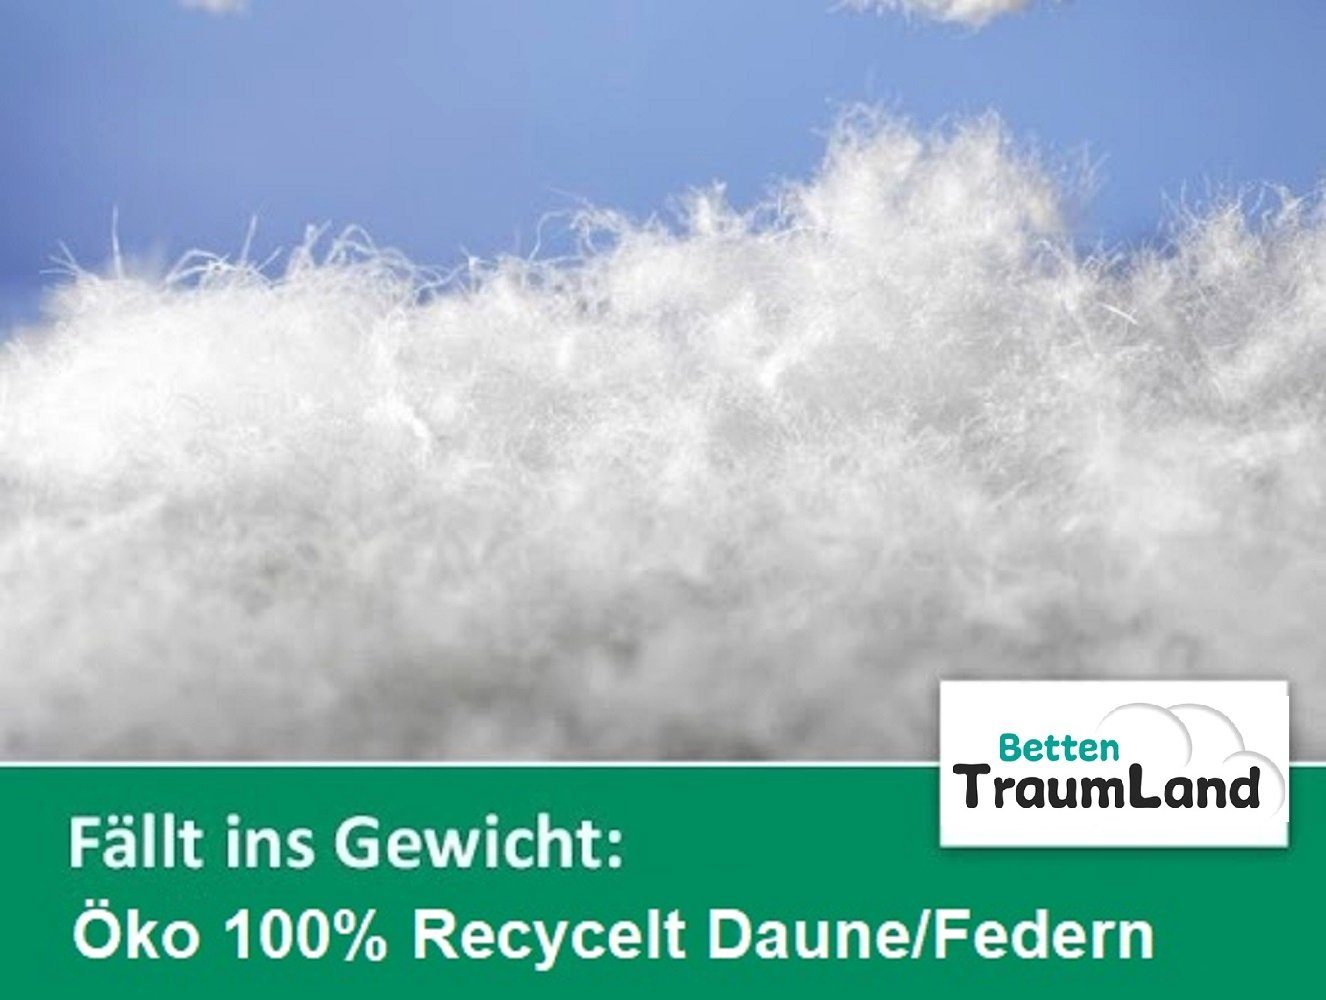 Sommerdecke 100% Betten Daune, Öko Daunenbettdecke, Daunen, Füllung: Deutschland hergestellt in Traumland, nachhaltig ökologisch